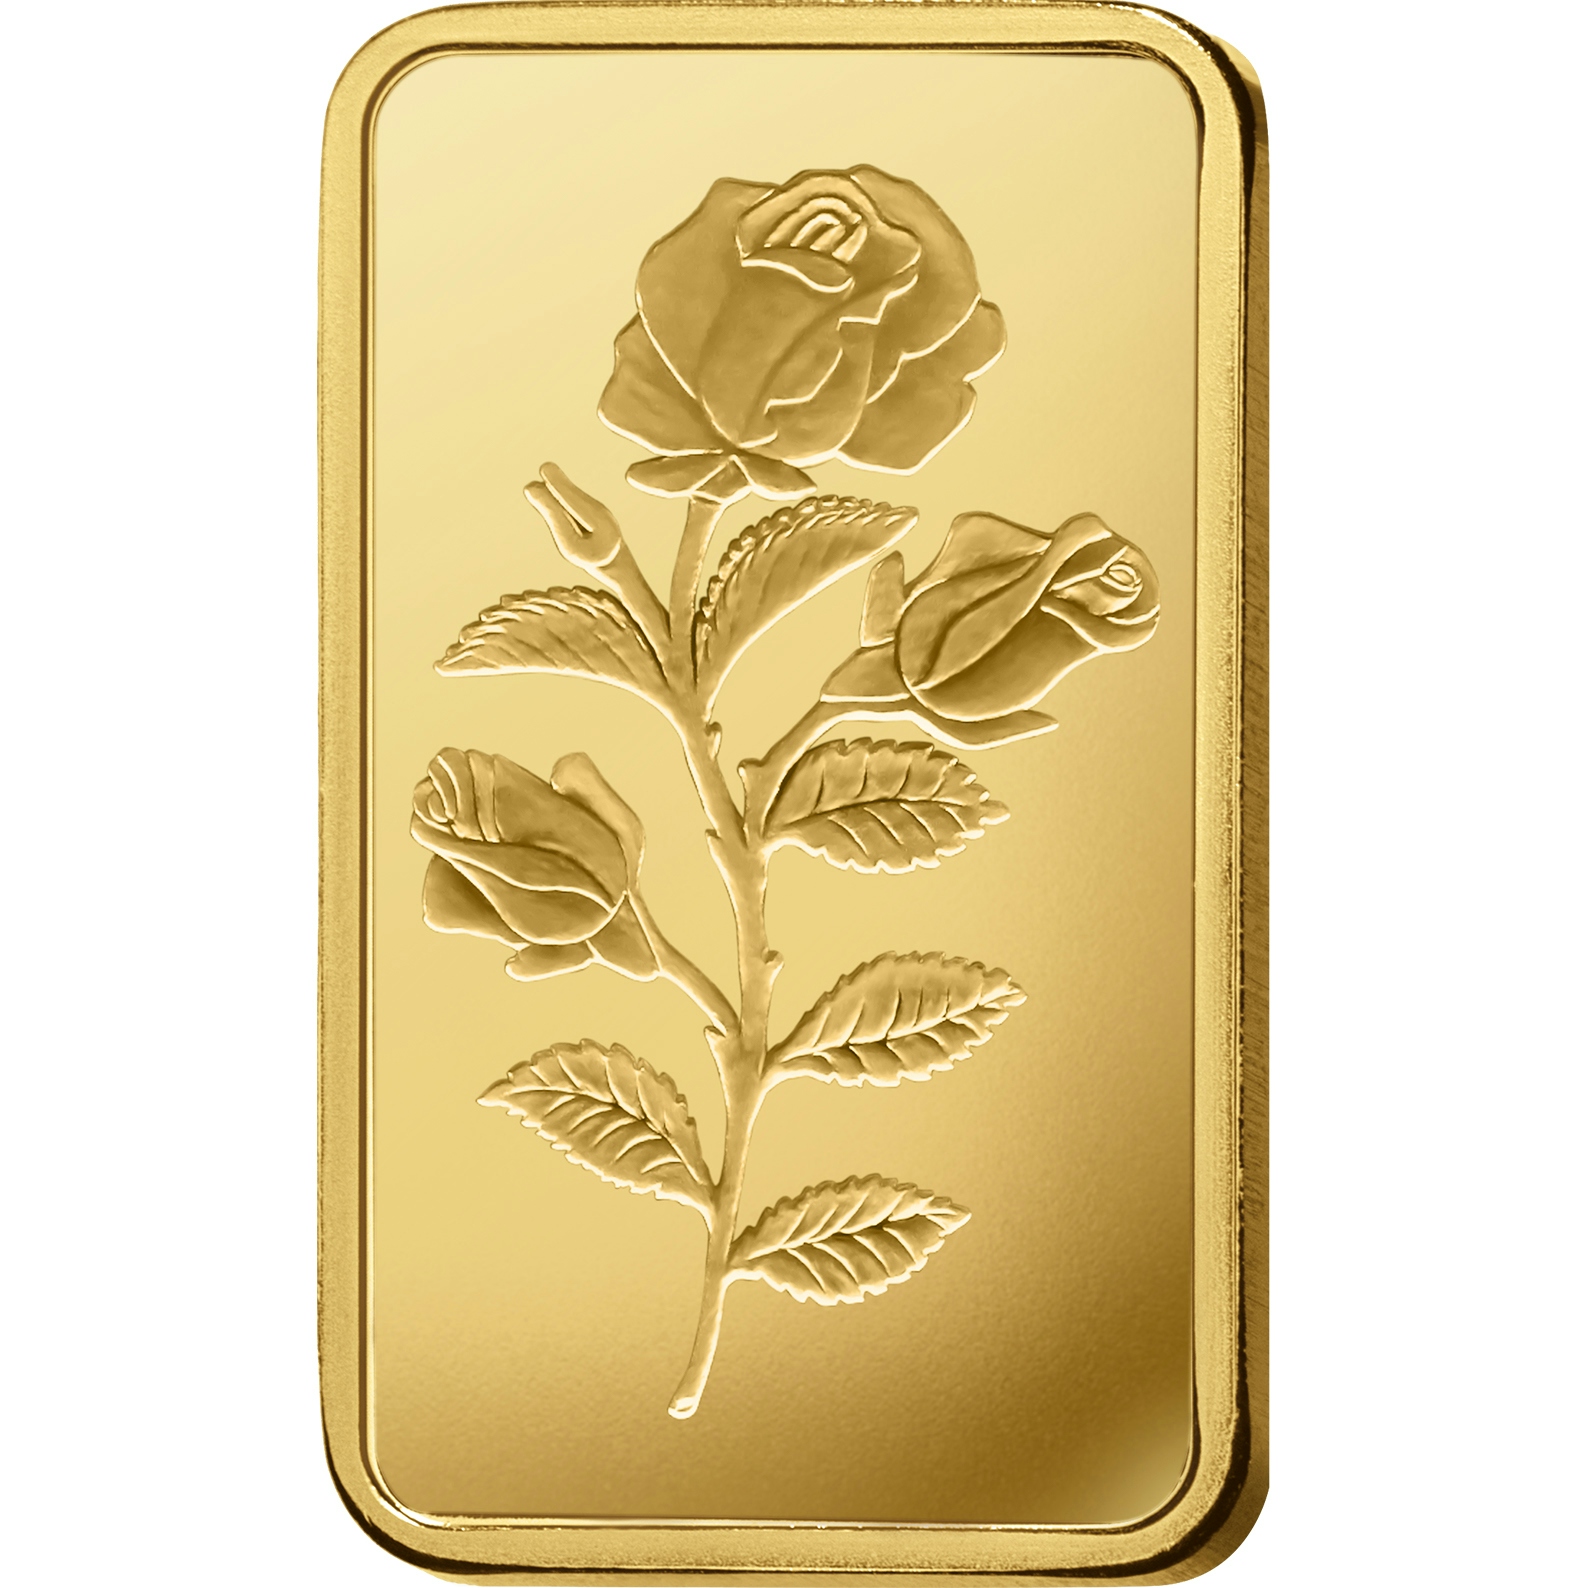 Compare oro, 100 grammi d'oro puro Rosa - PAMP Svizzera - Front